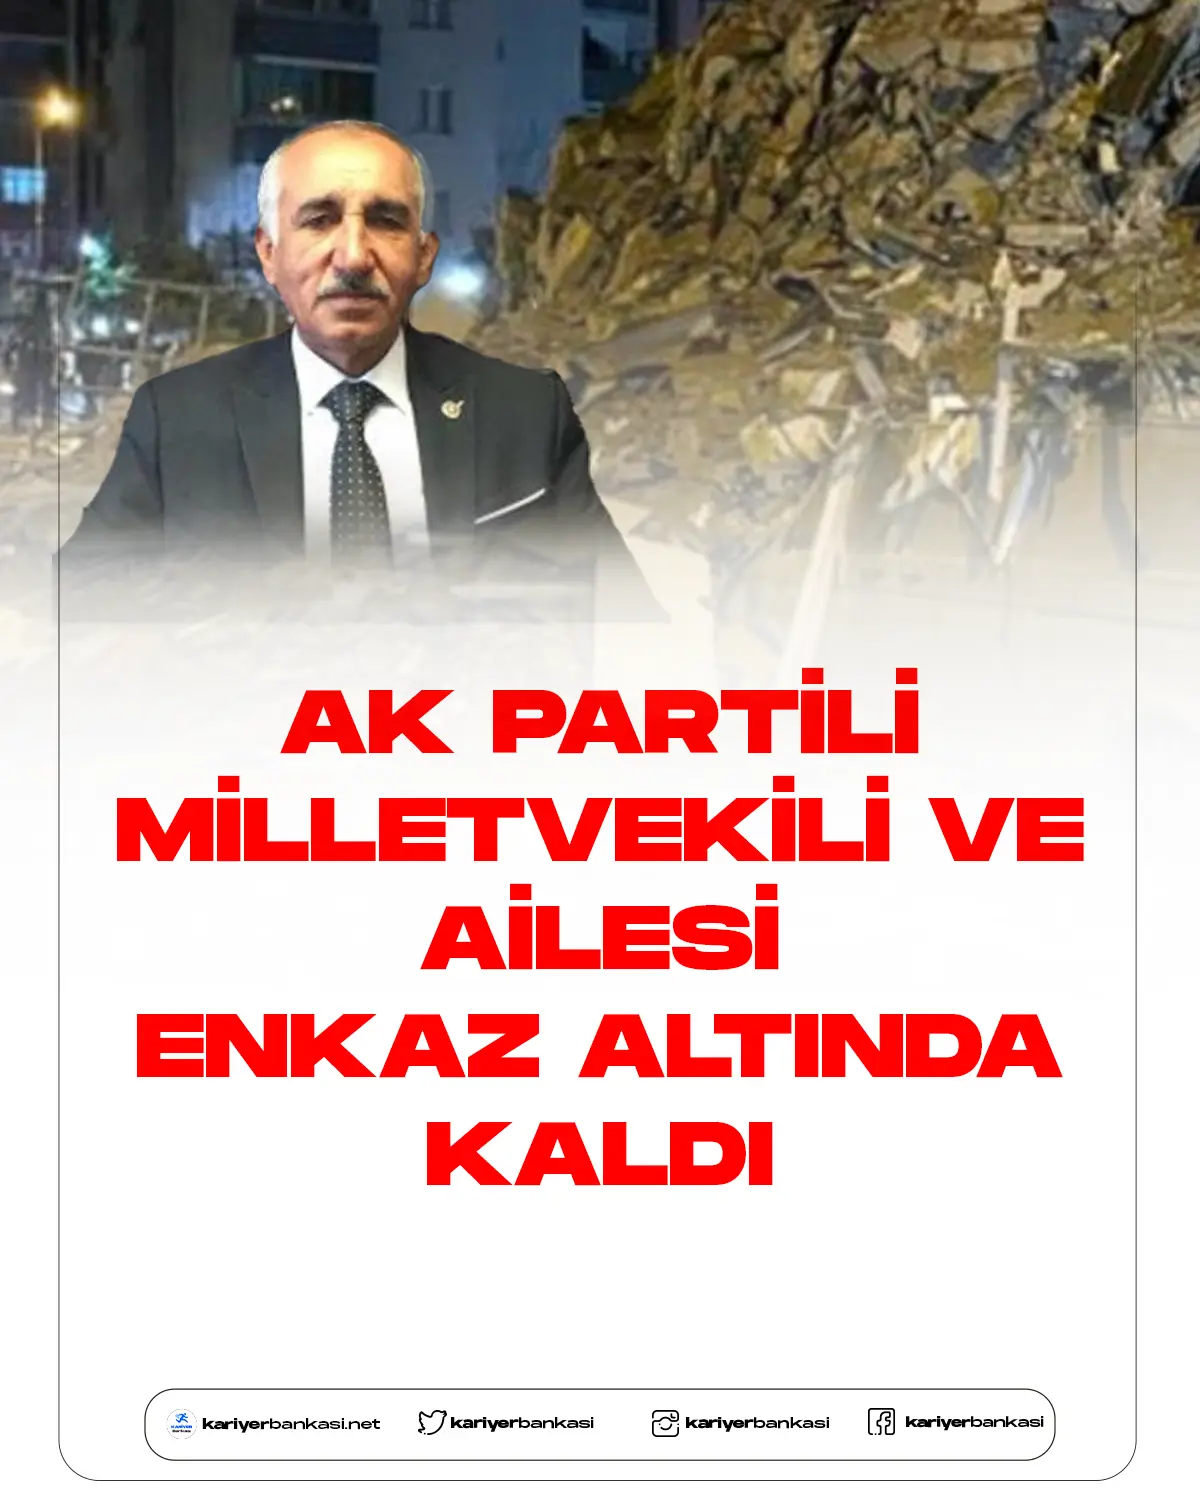 AK Partili vekil ve ailesi enkaz altında kaldı.